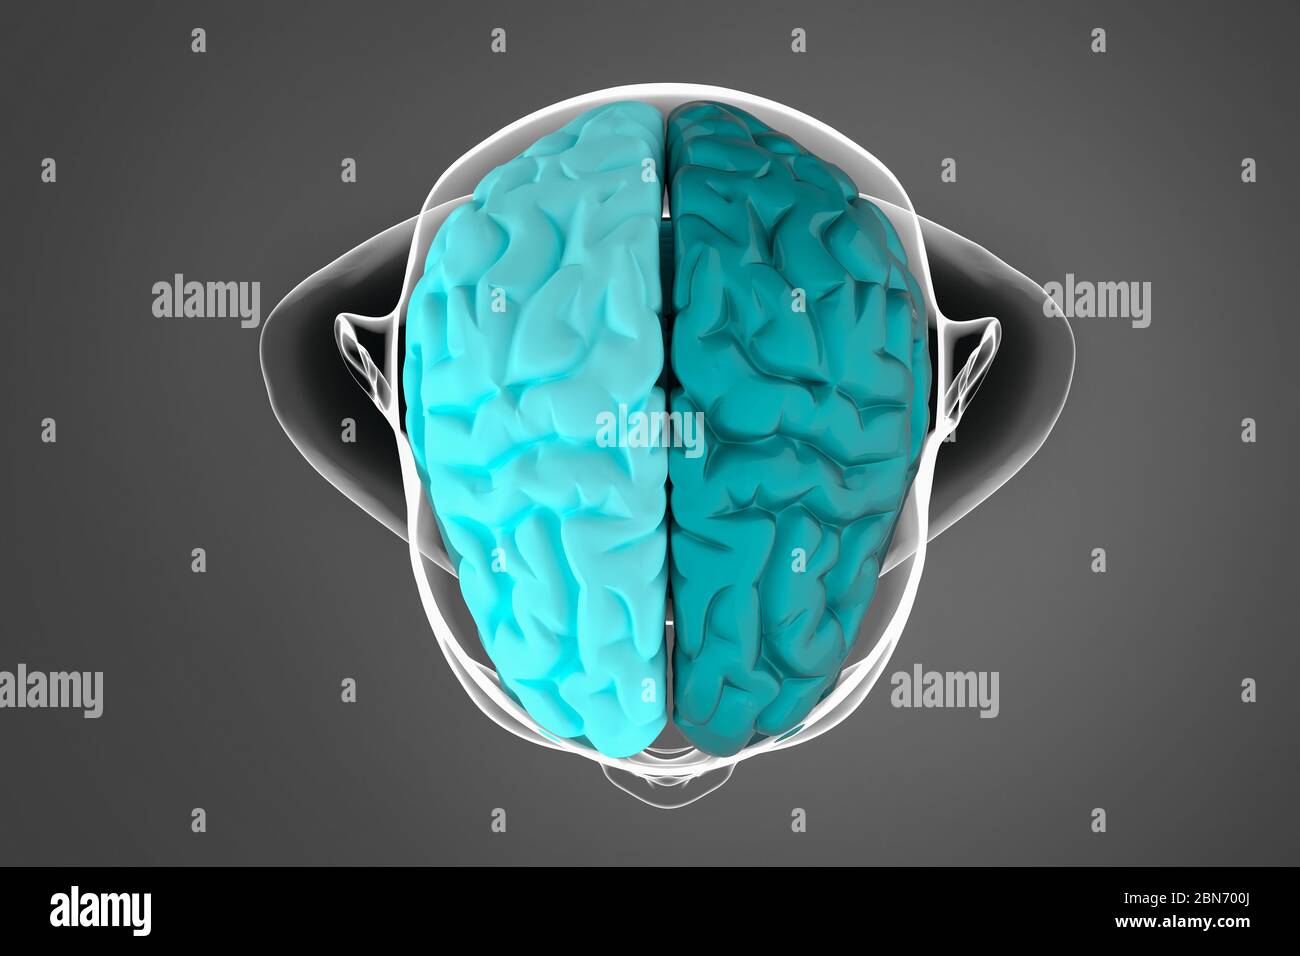 illustration 3d du cerveau humain, de l'hémisphère cérébral, sur fond sombre avec silhouette du corps Banque D'Images